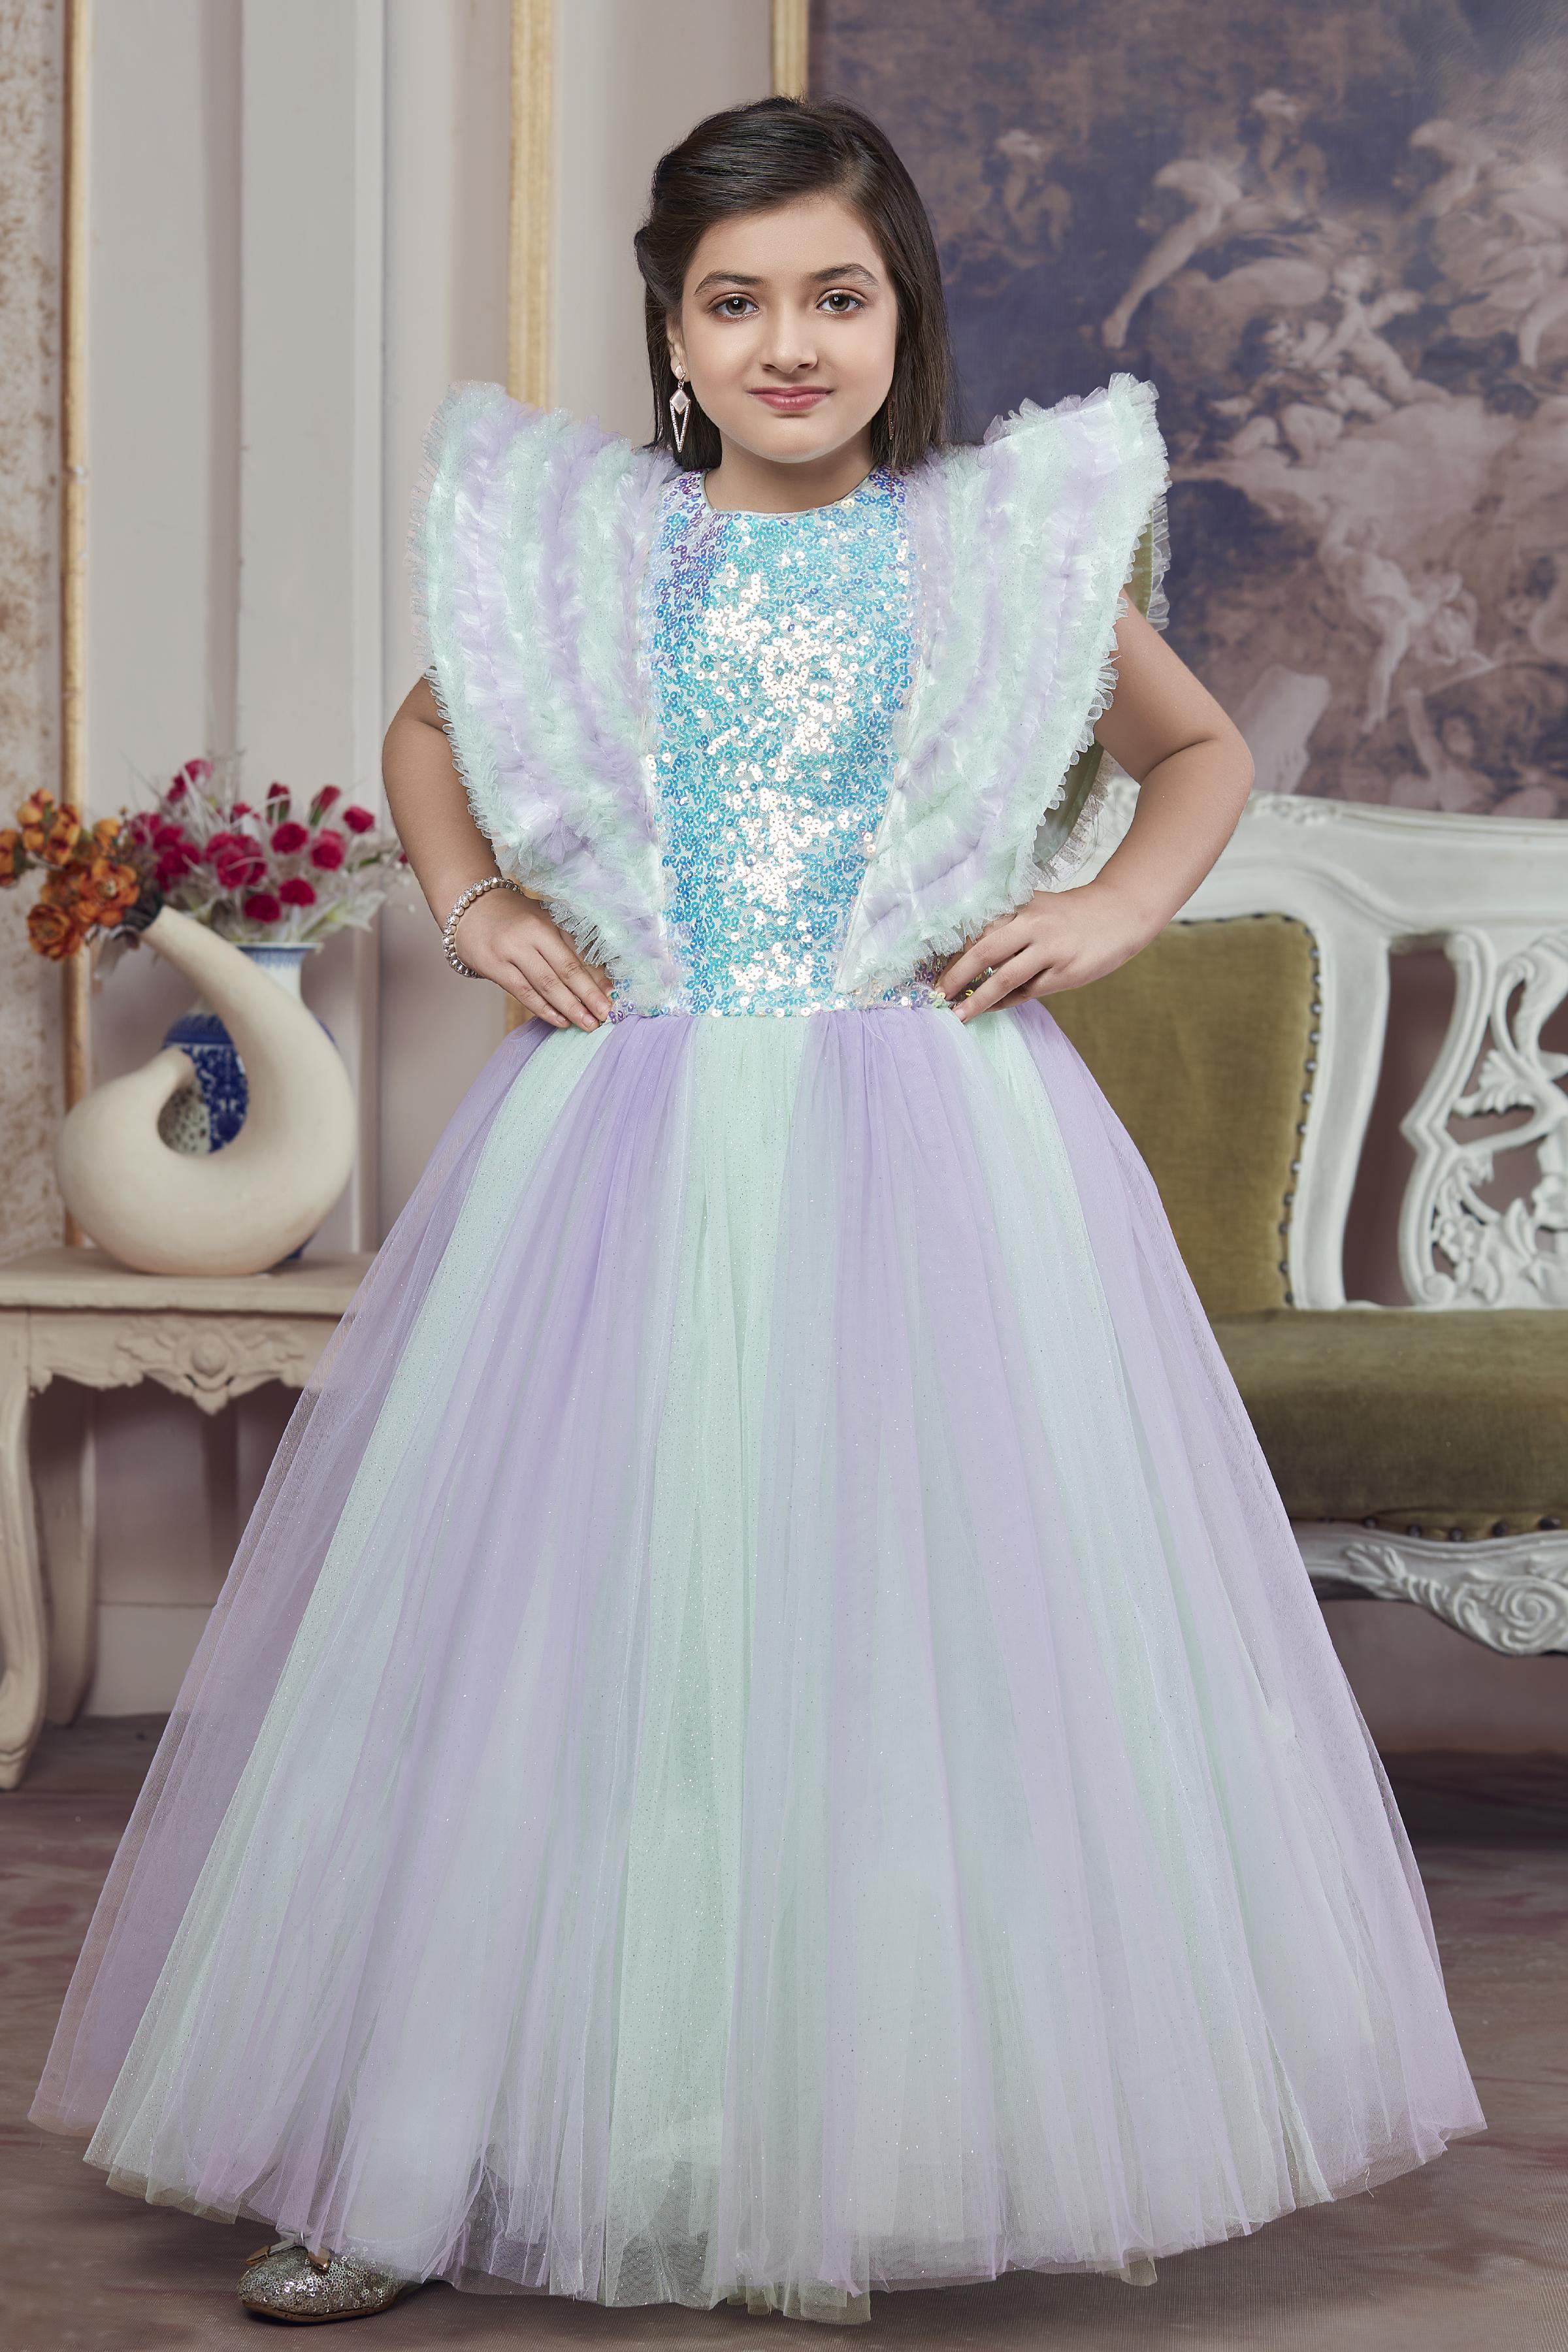 Lilac Dress| Glam Dress | Ball Gown Dress | Voluminous Dress | Glam  dresses, Ball gowns, Ball gown dresses